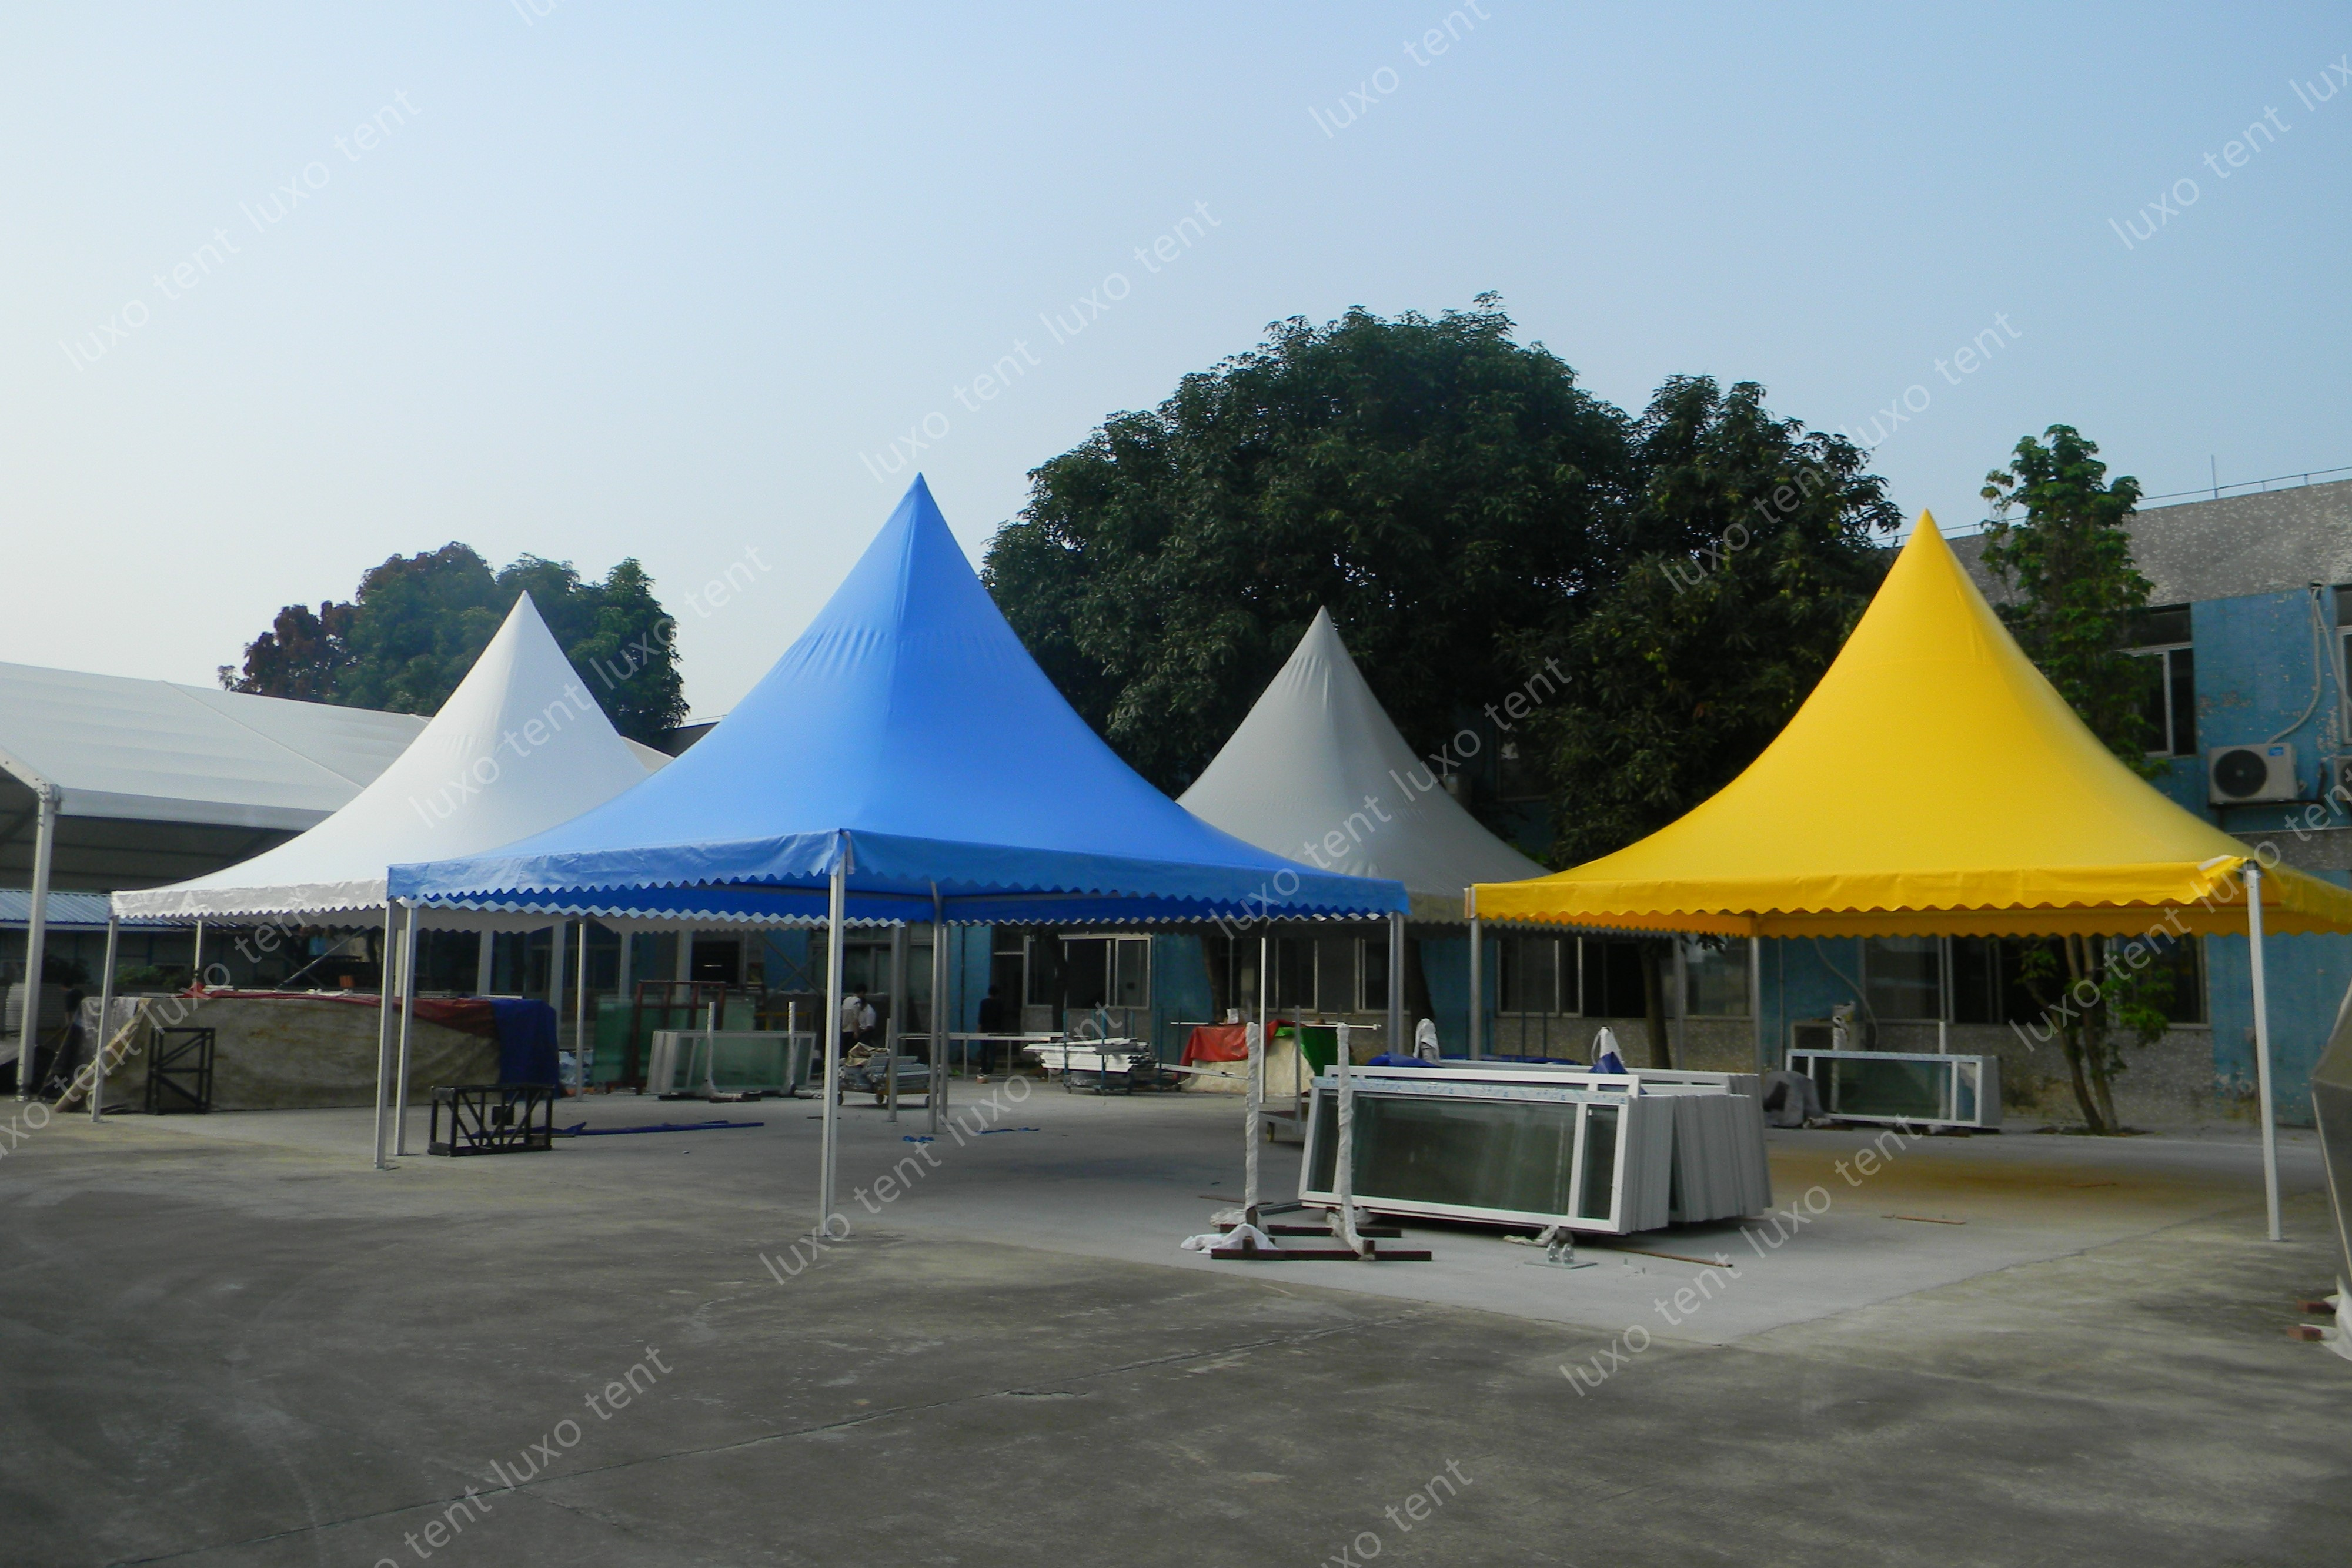 အပြာရောင် အလူမီနီယံဘောင် pvc canopy စေတီတော် marquee ပွဲတဲ